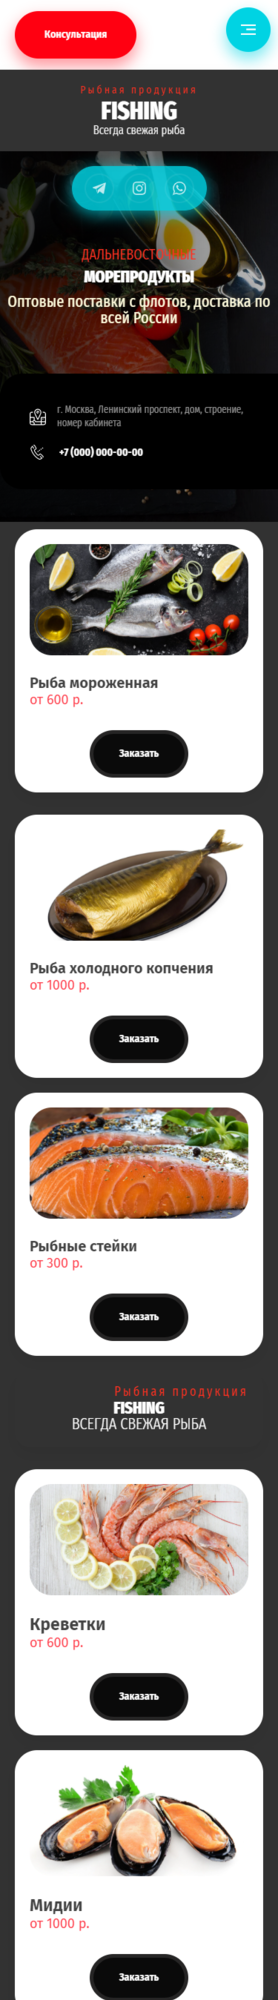 Готовый Сайт-Бизнес № 3231761 - Рыба и морепродукты (Мобильная версия)